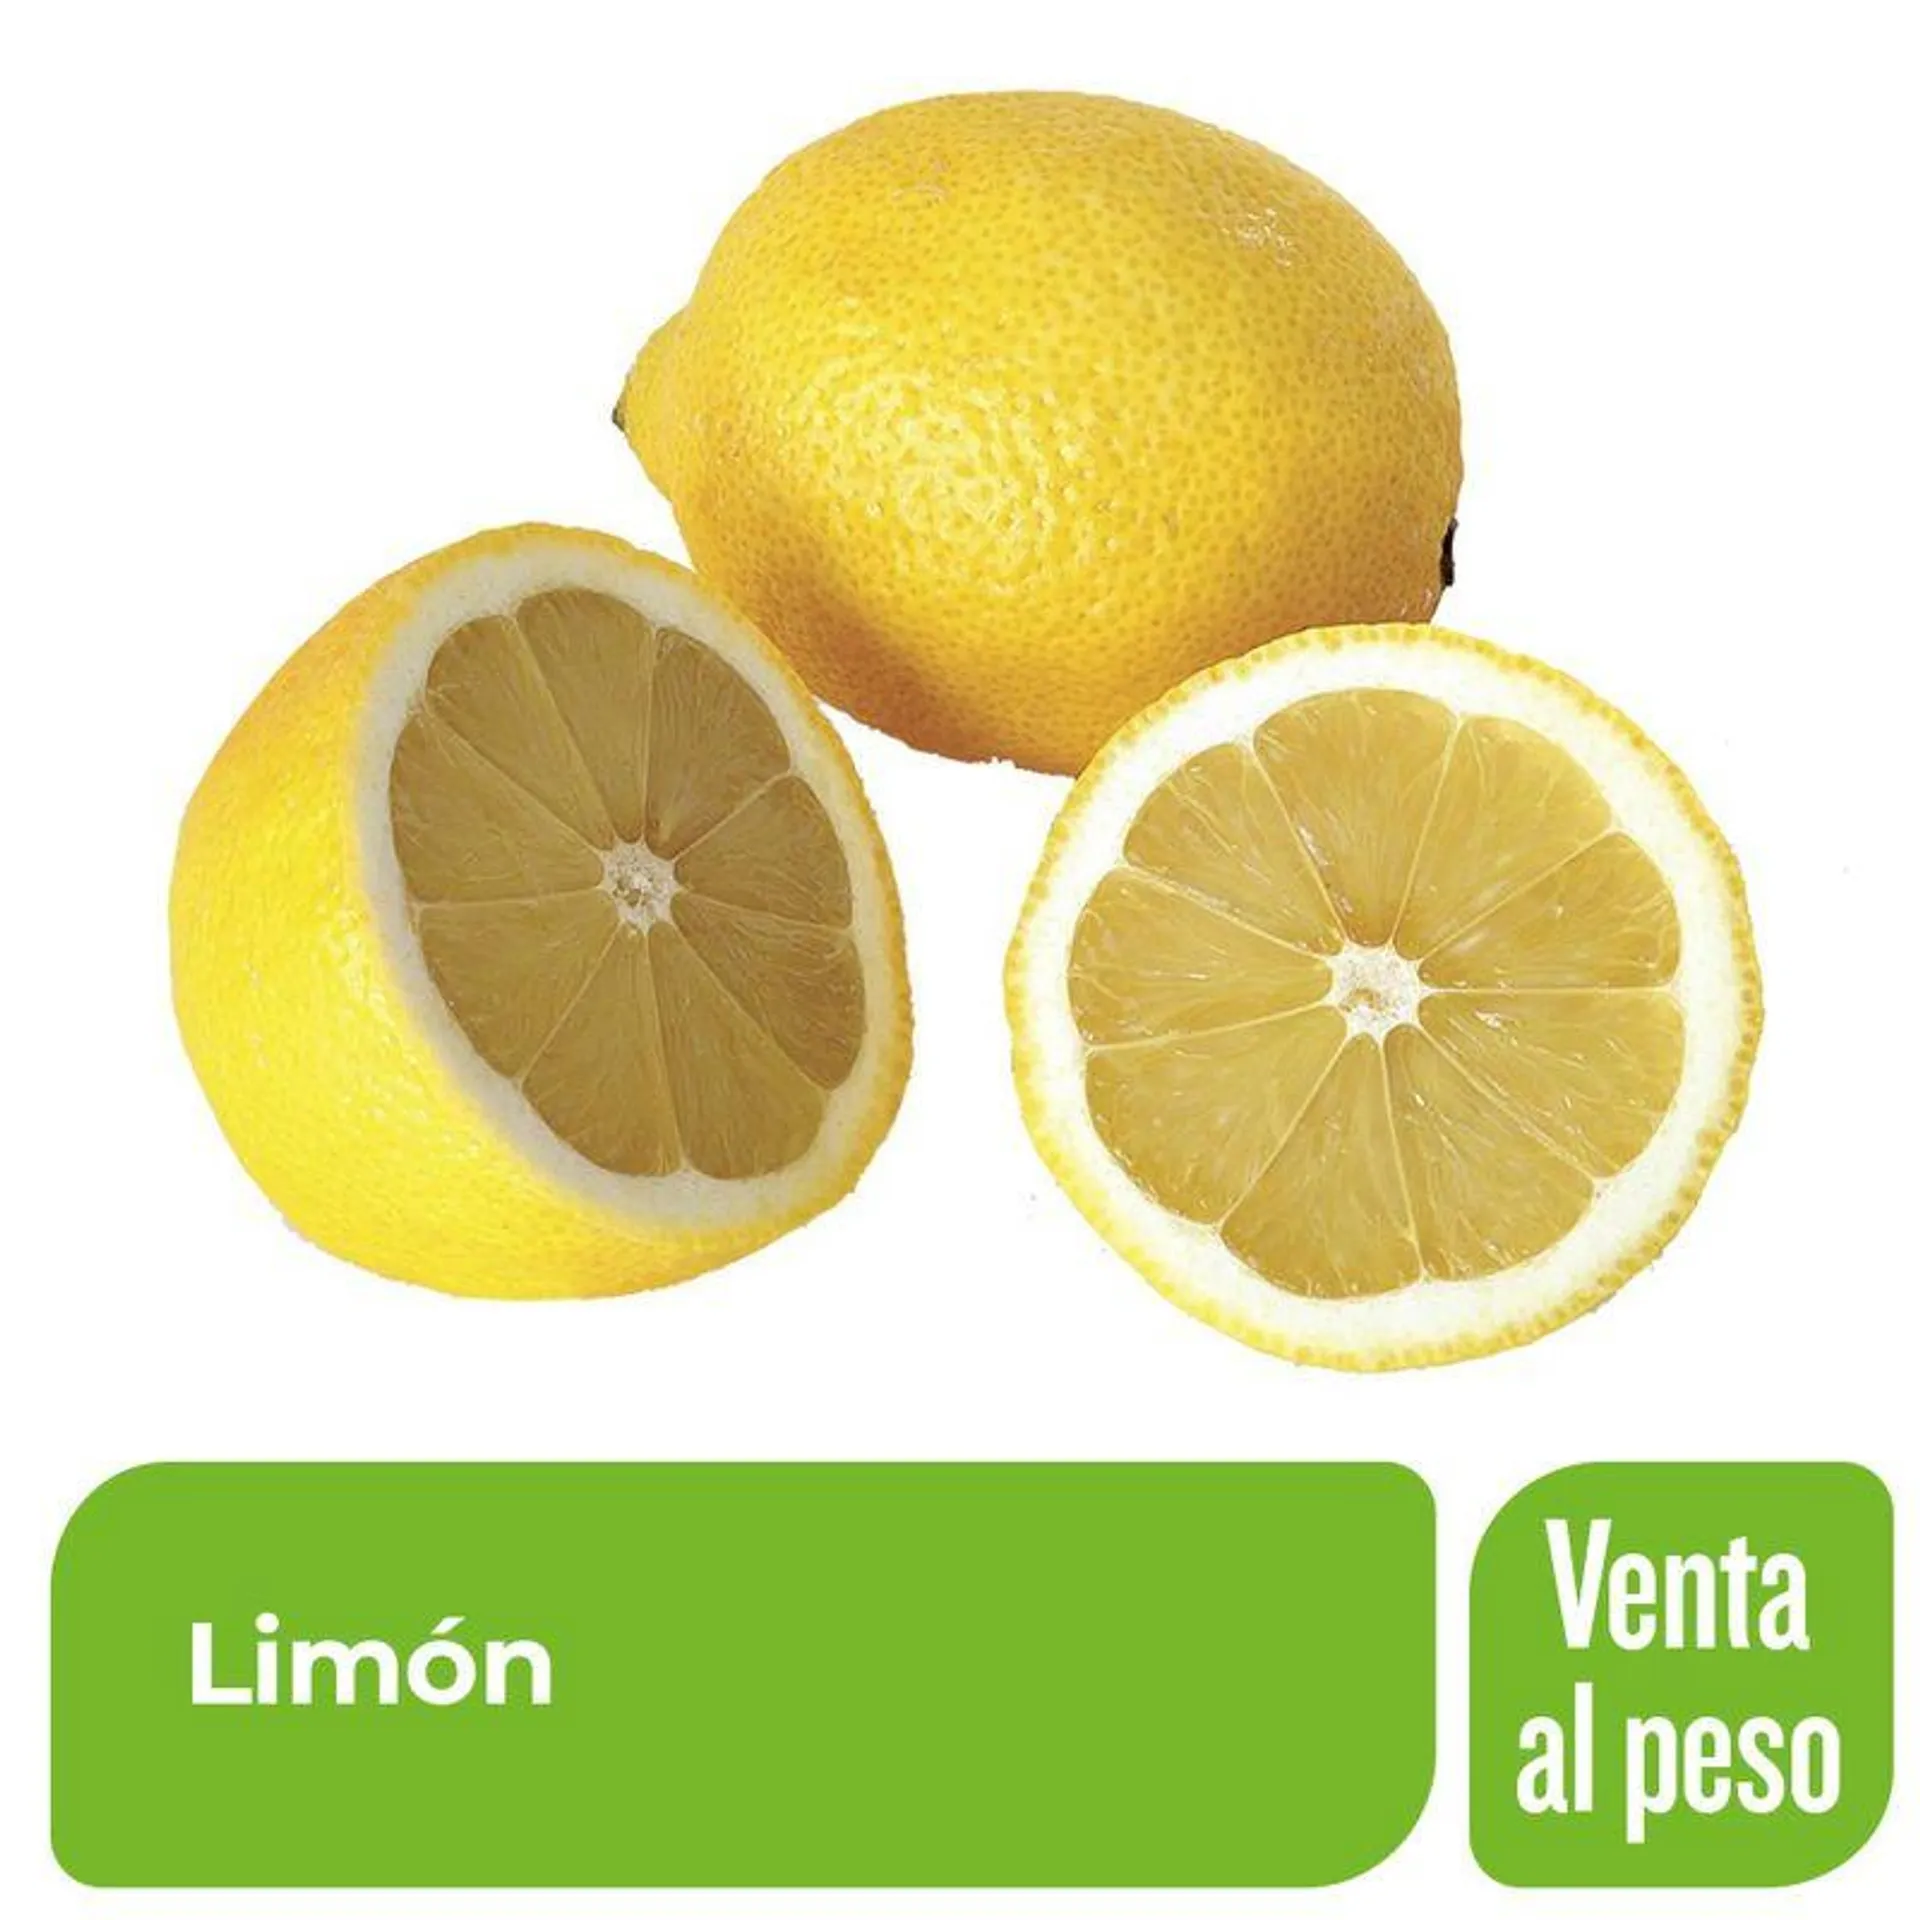 Limón x 1 Kg.